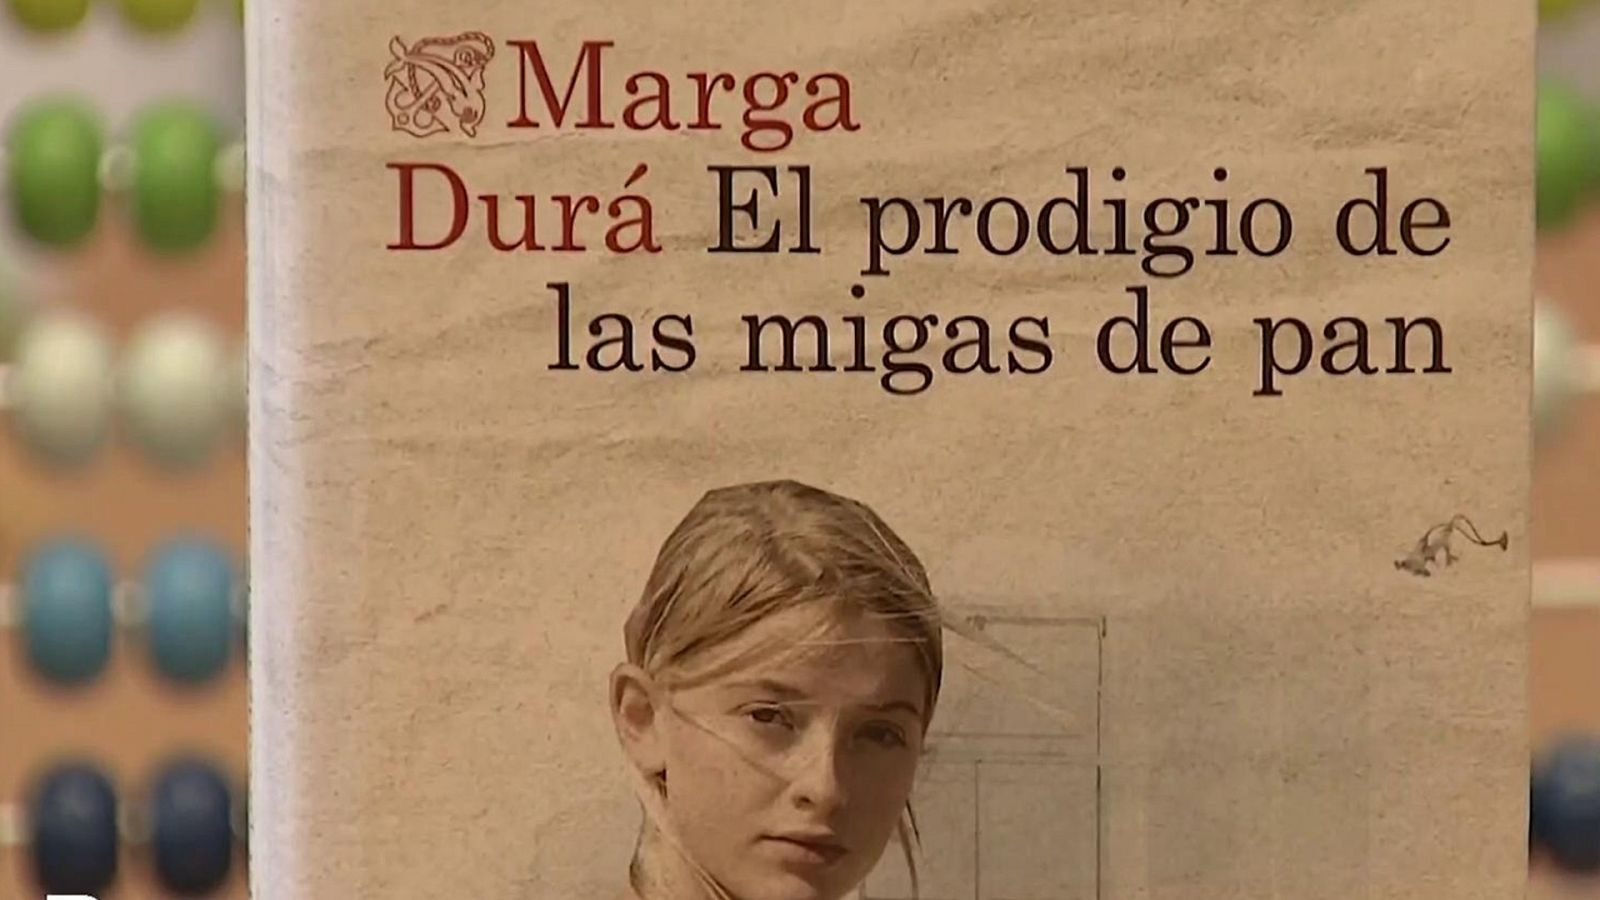 Un homenaje a la pedagoga Maria Montessori en forma de novela